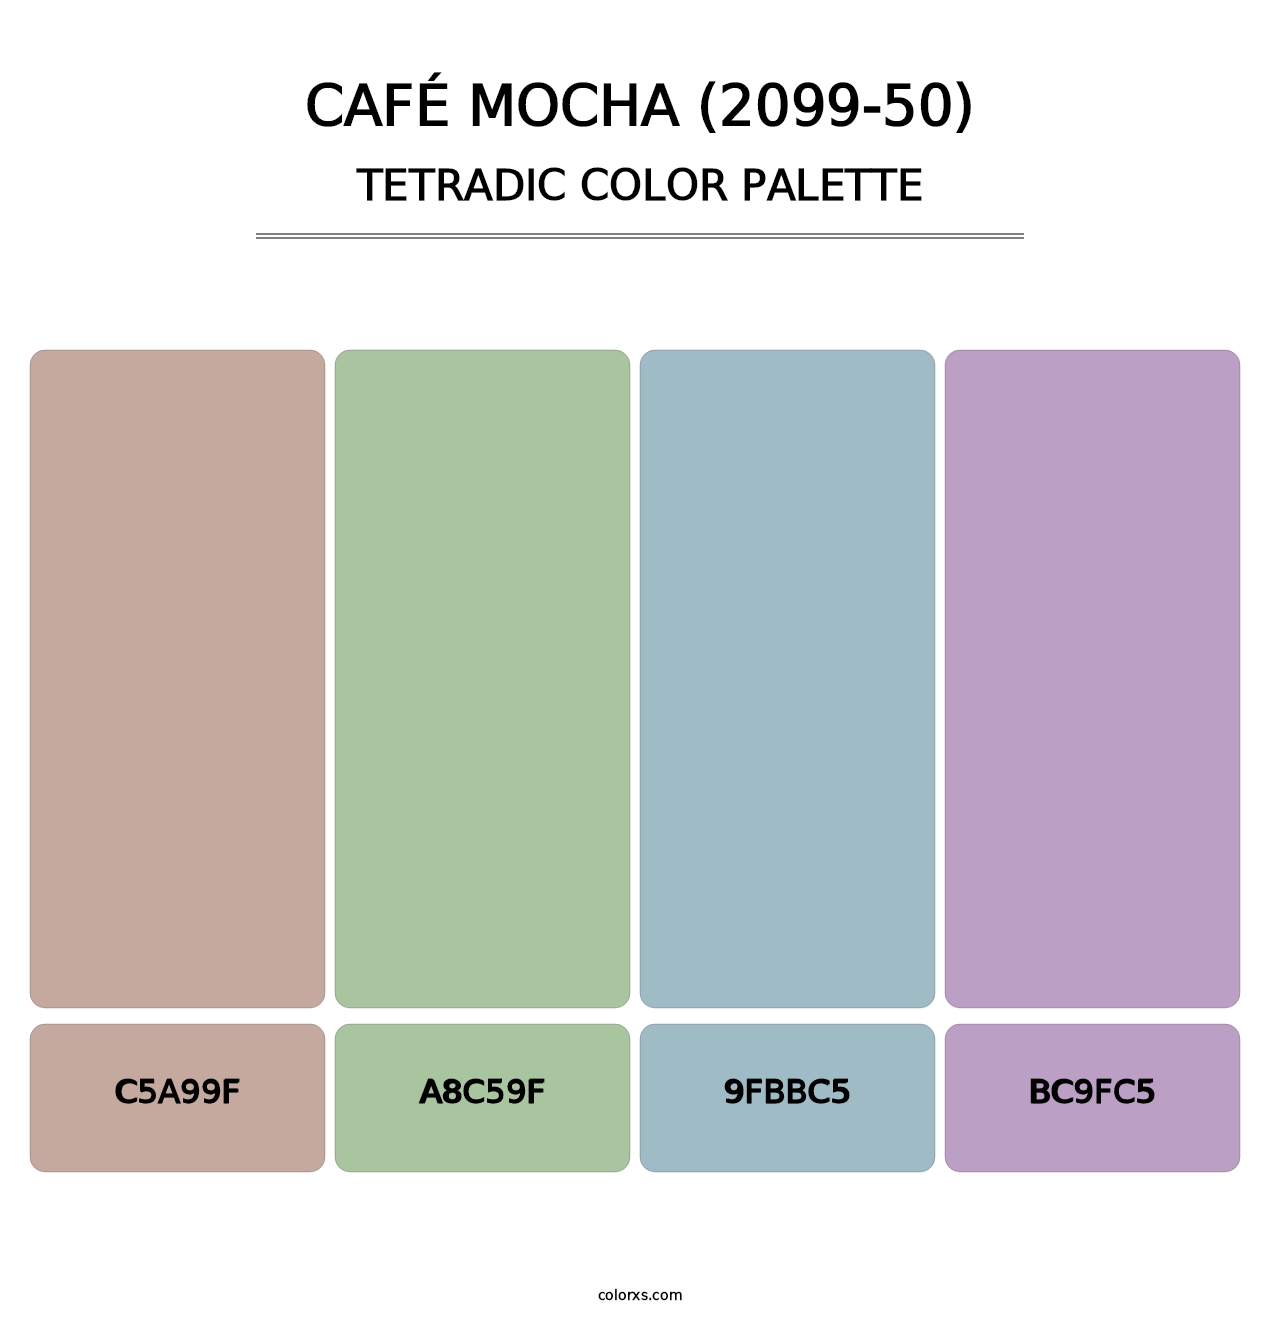 Café Mocha (2099-50) - Tetradic Color Palette